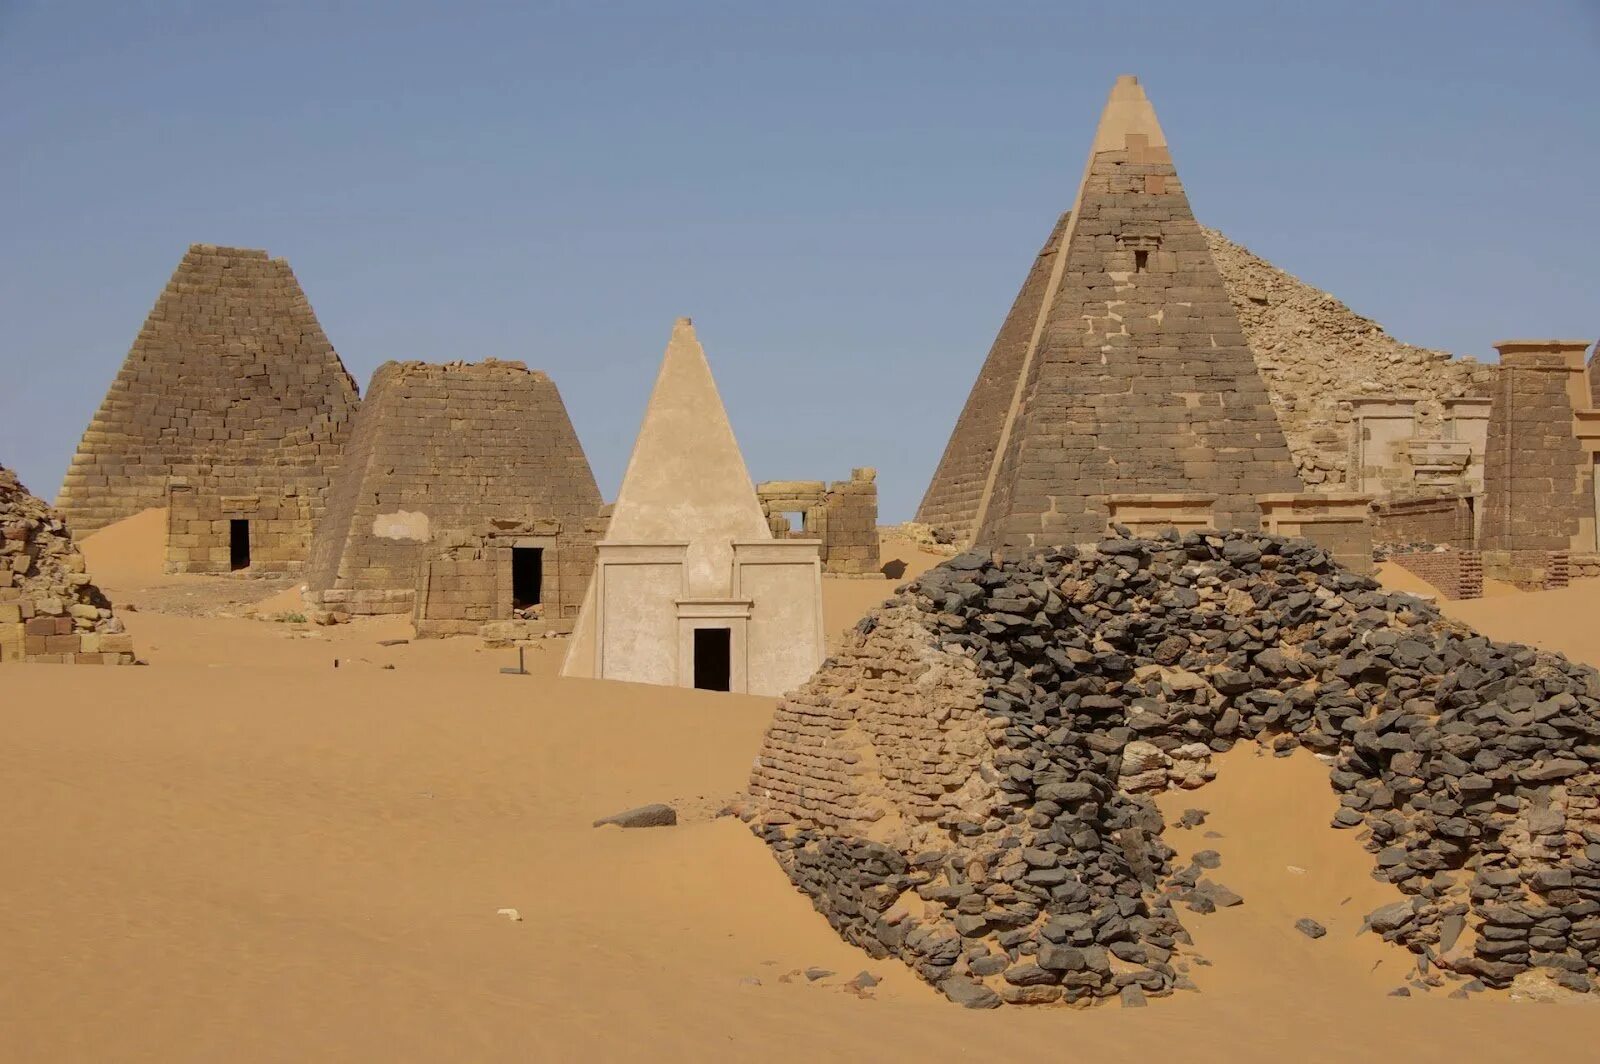 Географическое положение цивилизации мероэ. Нубийские пирамиды в Судане. Мероэ Судан. Пирамиды Мероэ. Нубийские пирамиды Мероэ.